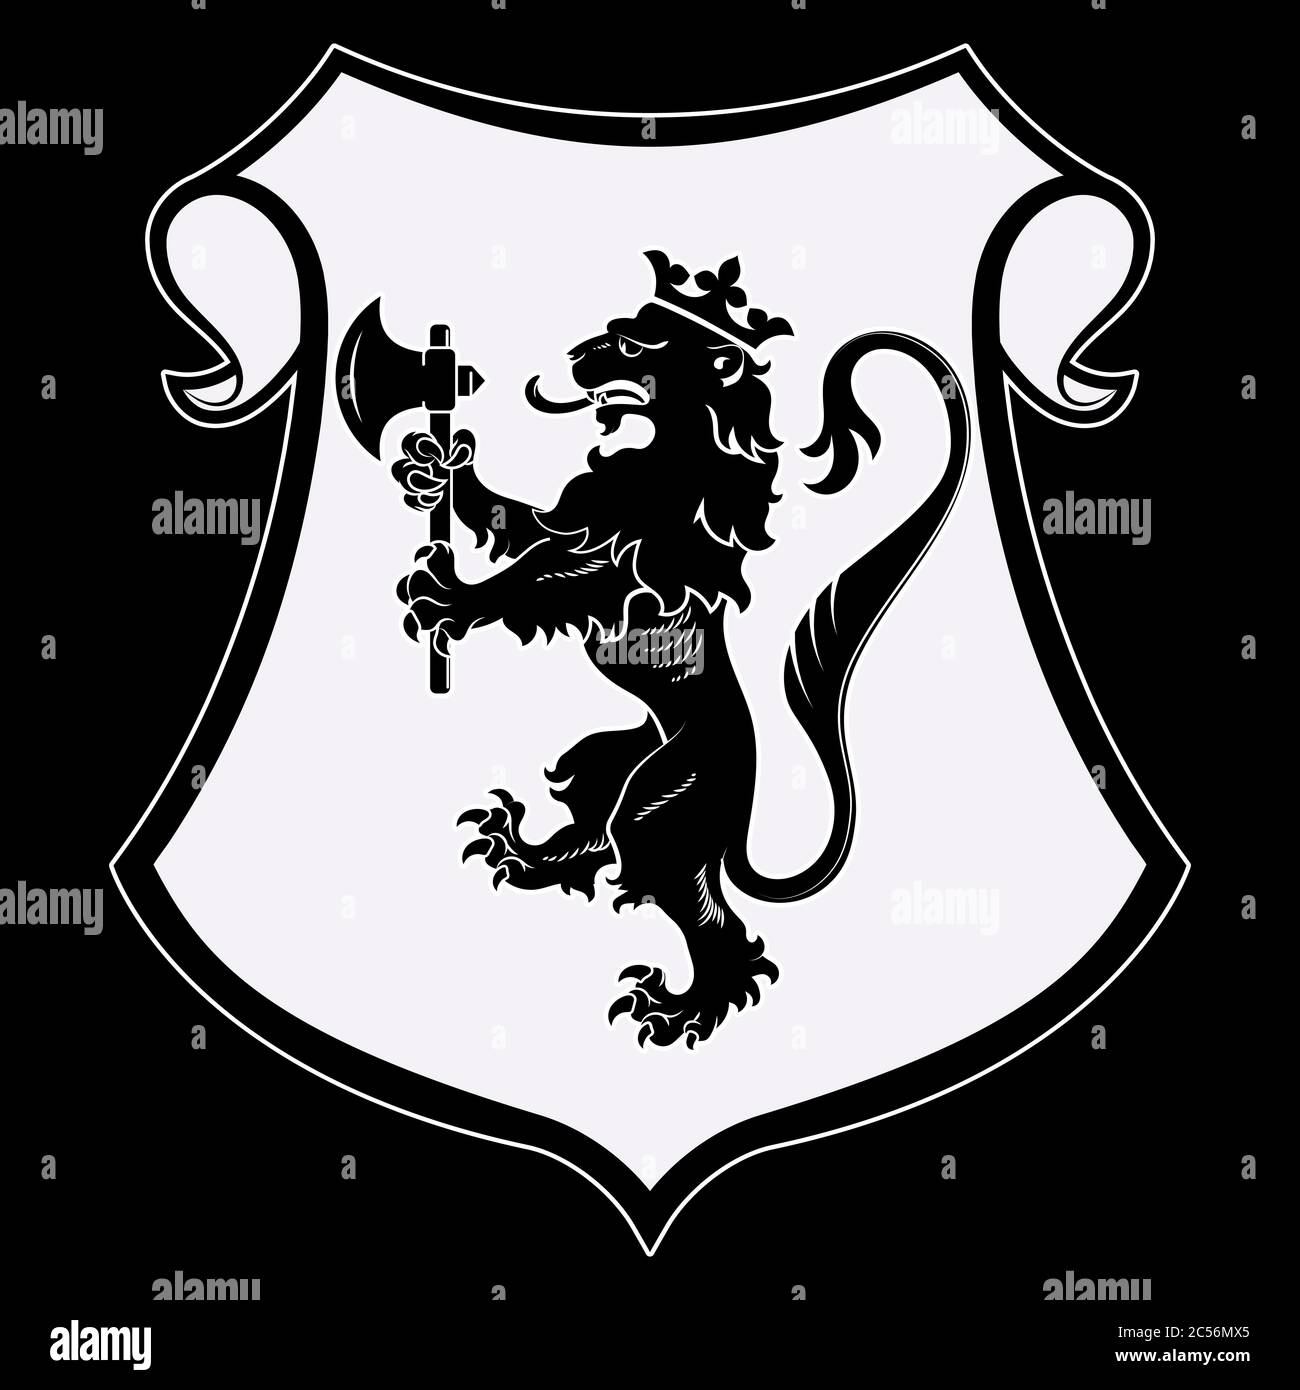 Stemma araldico. Silhouette di leone araldico, scudo araldico con un leone coronato che tiene un'ascia nelle zampe anteriori Illustrazione Vettoriale